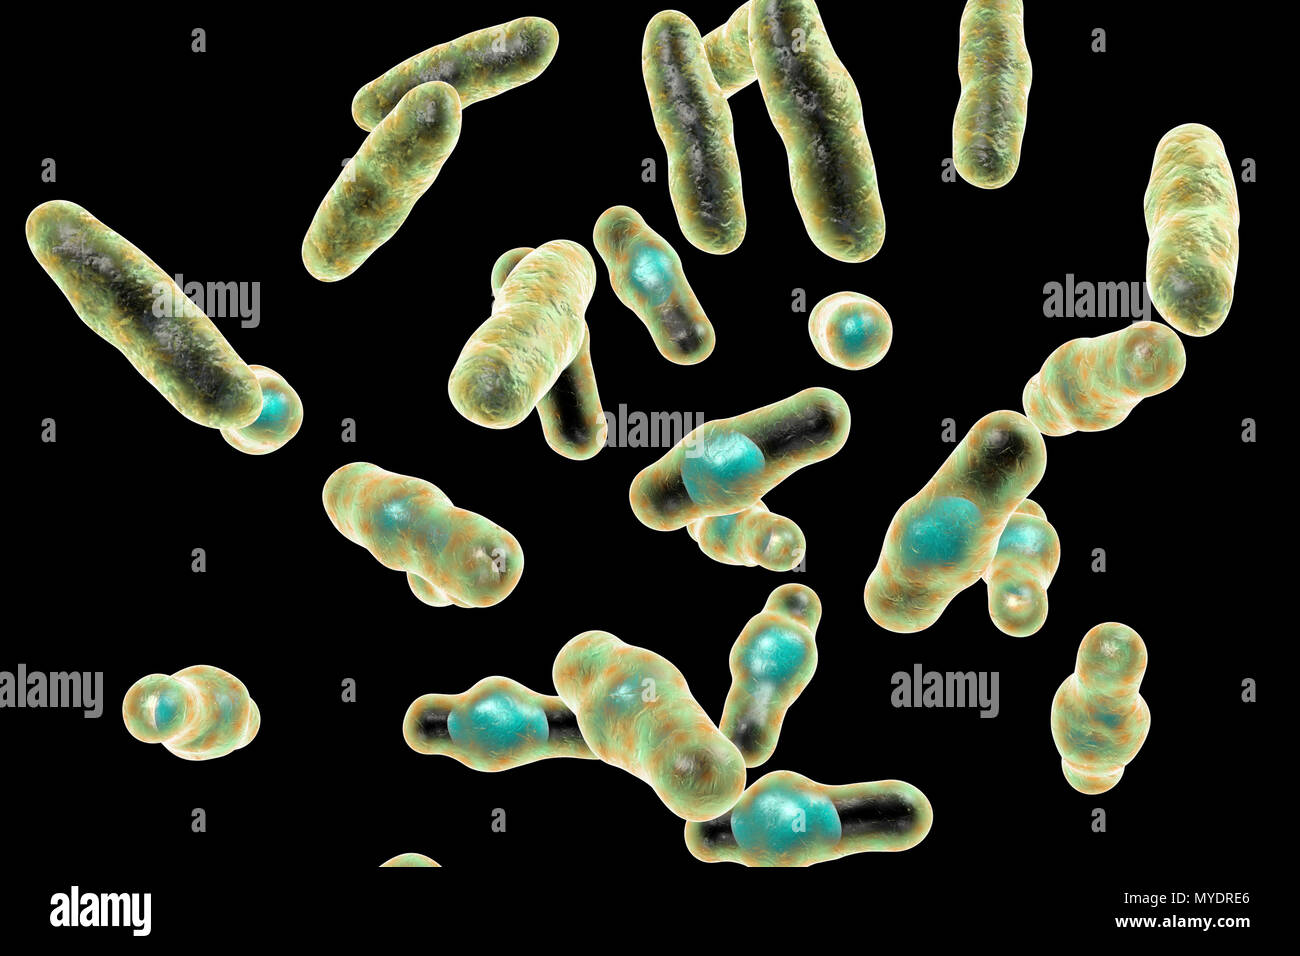 Computer Abbildung von Clostridium perfringens. Diese sind Grampositive, endospore-forming, stabförmige Bakterien. Vegetative und spore Stadien. Dieses Bakterium kommt häufig in den Darm des Menschen und viele Einheimische und wilde Tiere. Lebensmittelvergiftung tritt auf, wenn Nahrungsmittel wie Fleisch, Soße und Geflügel gekühlt werden und/oder nicht richtig aufgewärmt und eine große Anzahl von vegetativen Zellen werden aufgenommen. Toxinproduktion in der verdauungstrakt ist mit sporulation verbunden. C. perfringens ist auch eine wichtige Erreger von Wundinfektionen, eine Vielzahl von Toxinen, die sowohl lokal als auch systemisch Handeln zu produzieren. Stockfoto